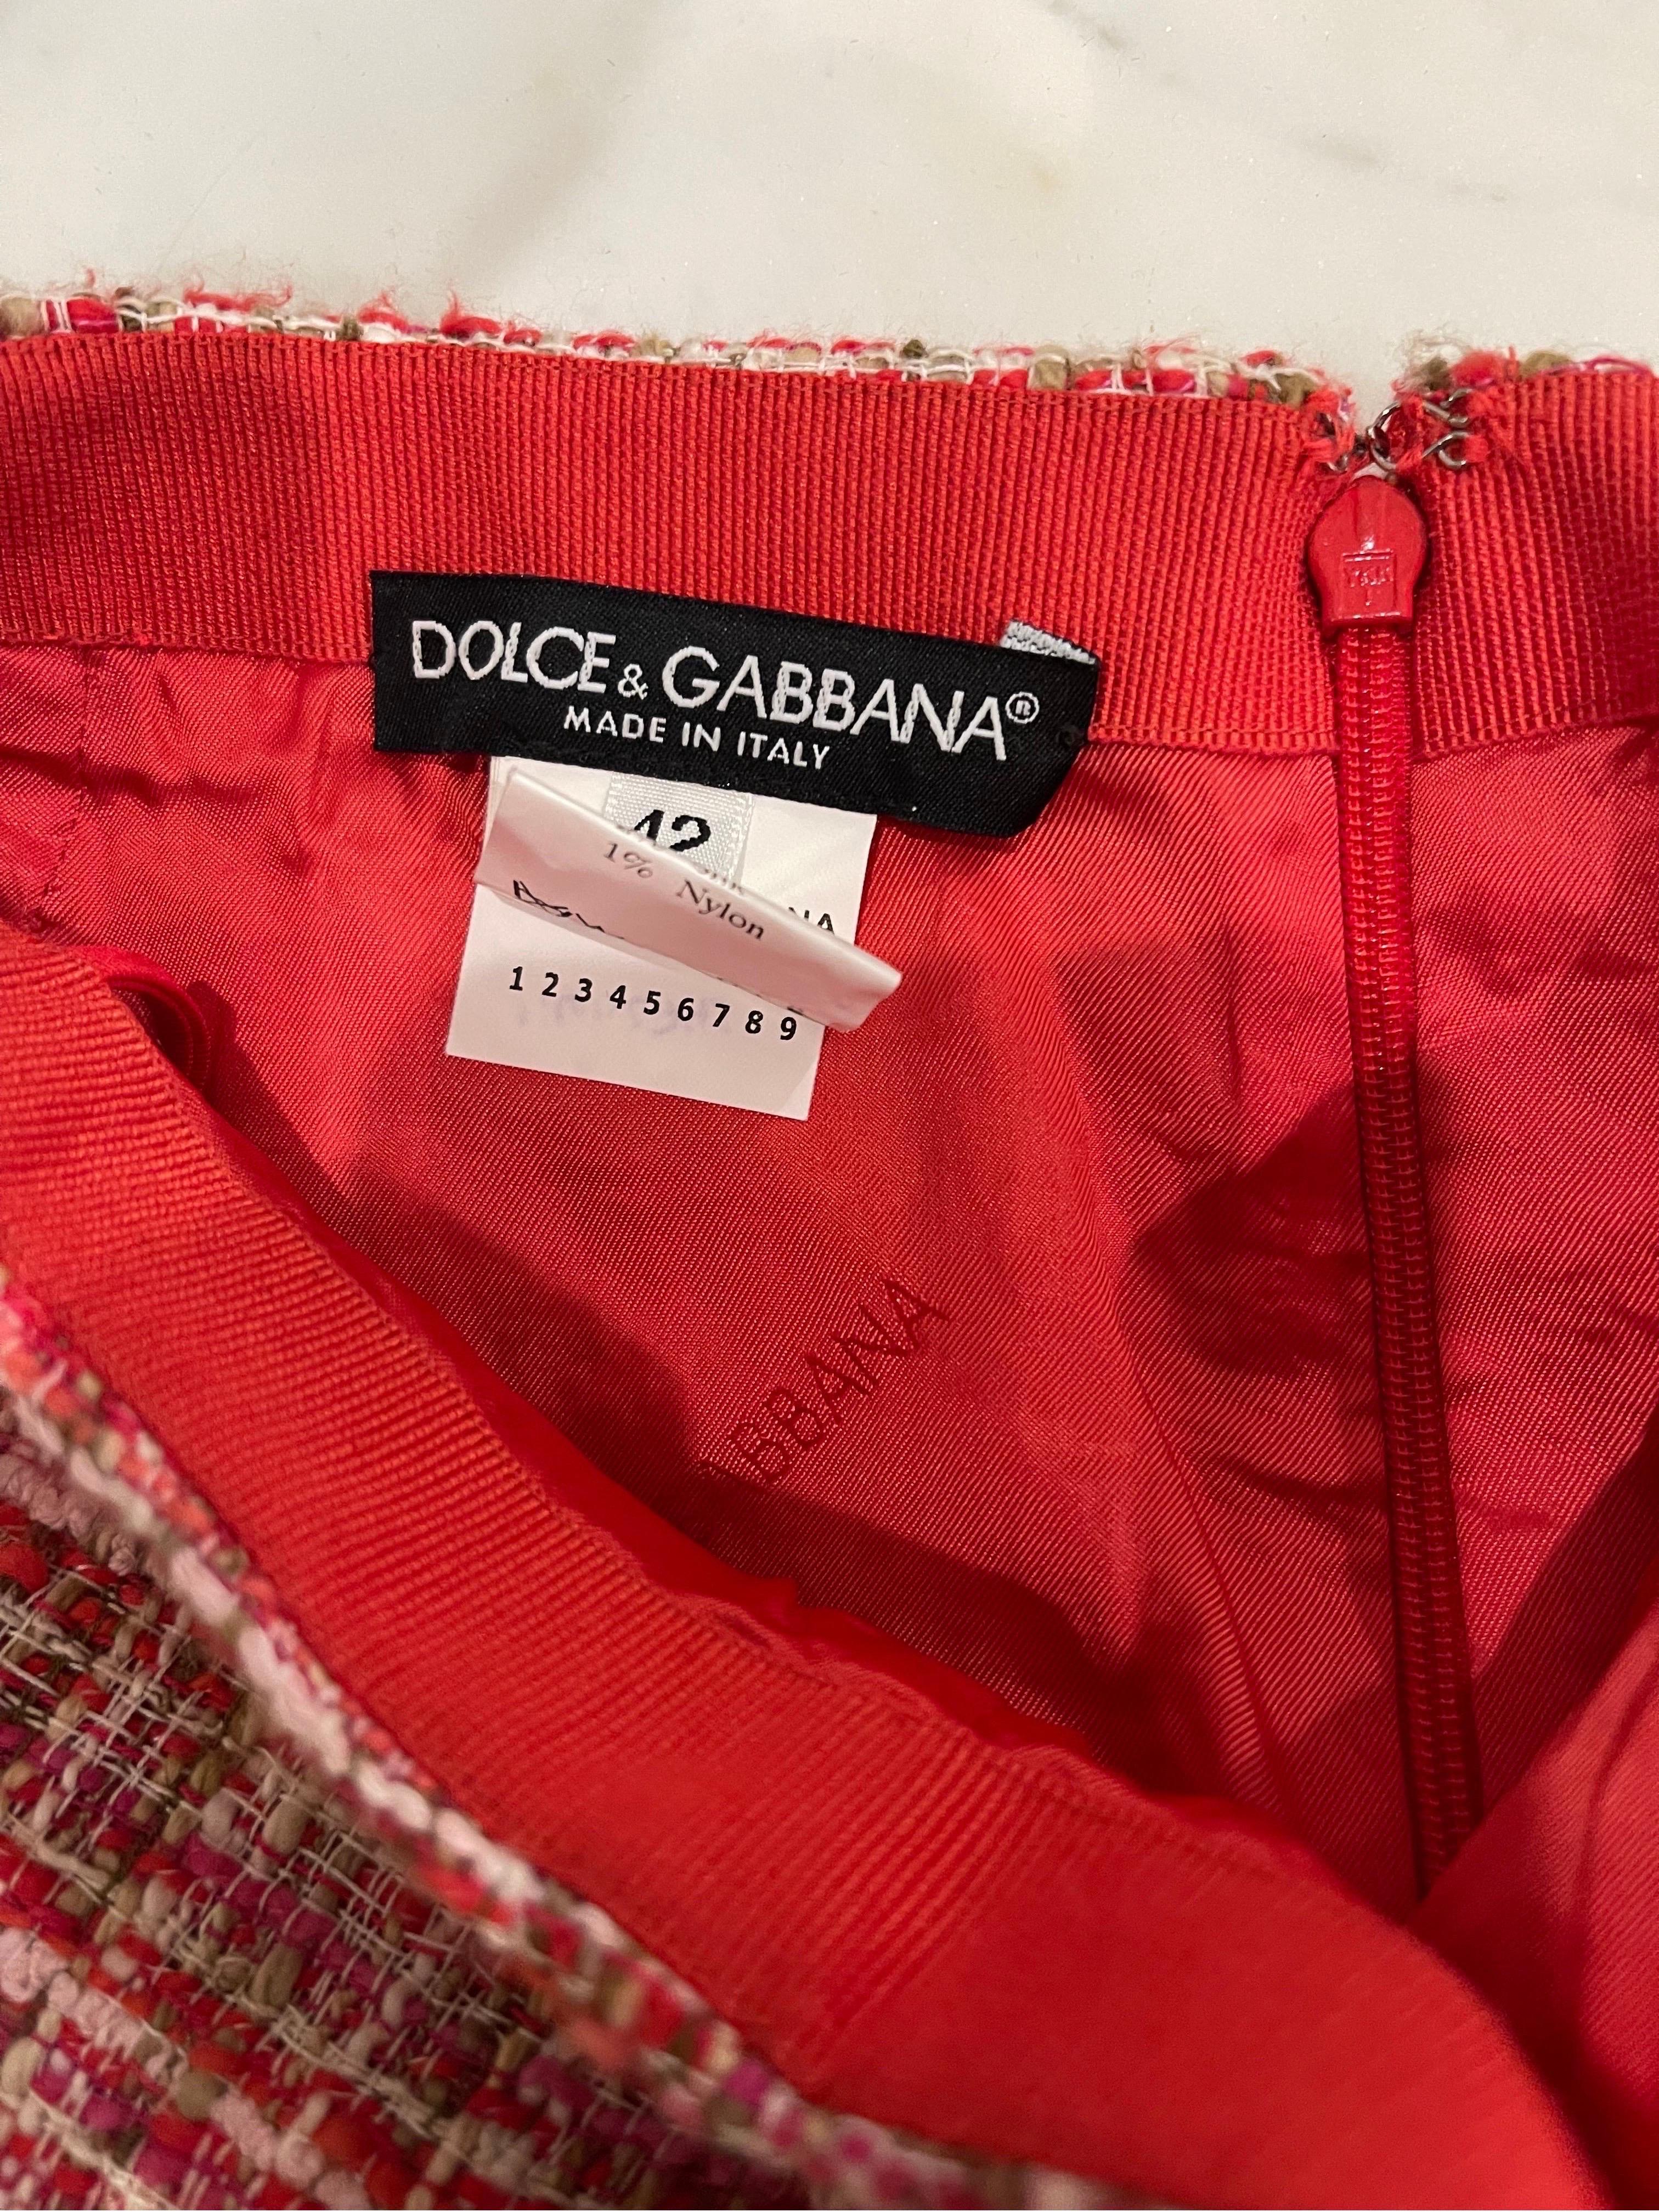 Erstaunlich späten 90er DOLCE & GABBANA bunten heißen rosa Tweed-Minirock ! Mit leuchtenden Farben in Rosa, Rot, Hellbraun und Elfenbein. Große neongrüne/gelbe Perlen über der Hüfte. Verdeckter Reißverschluss auf der Rückseite mit Haken- und